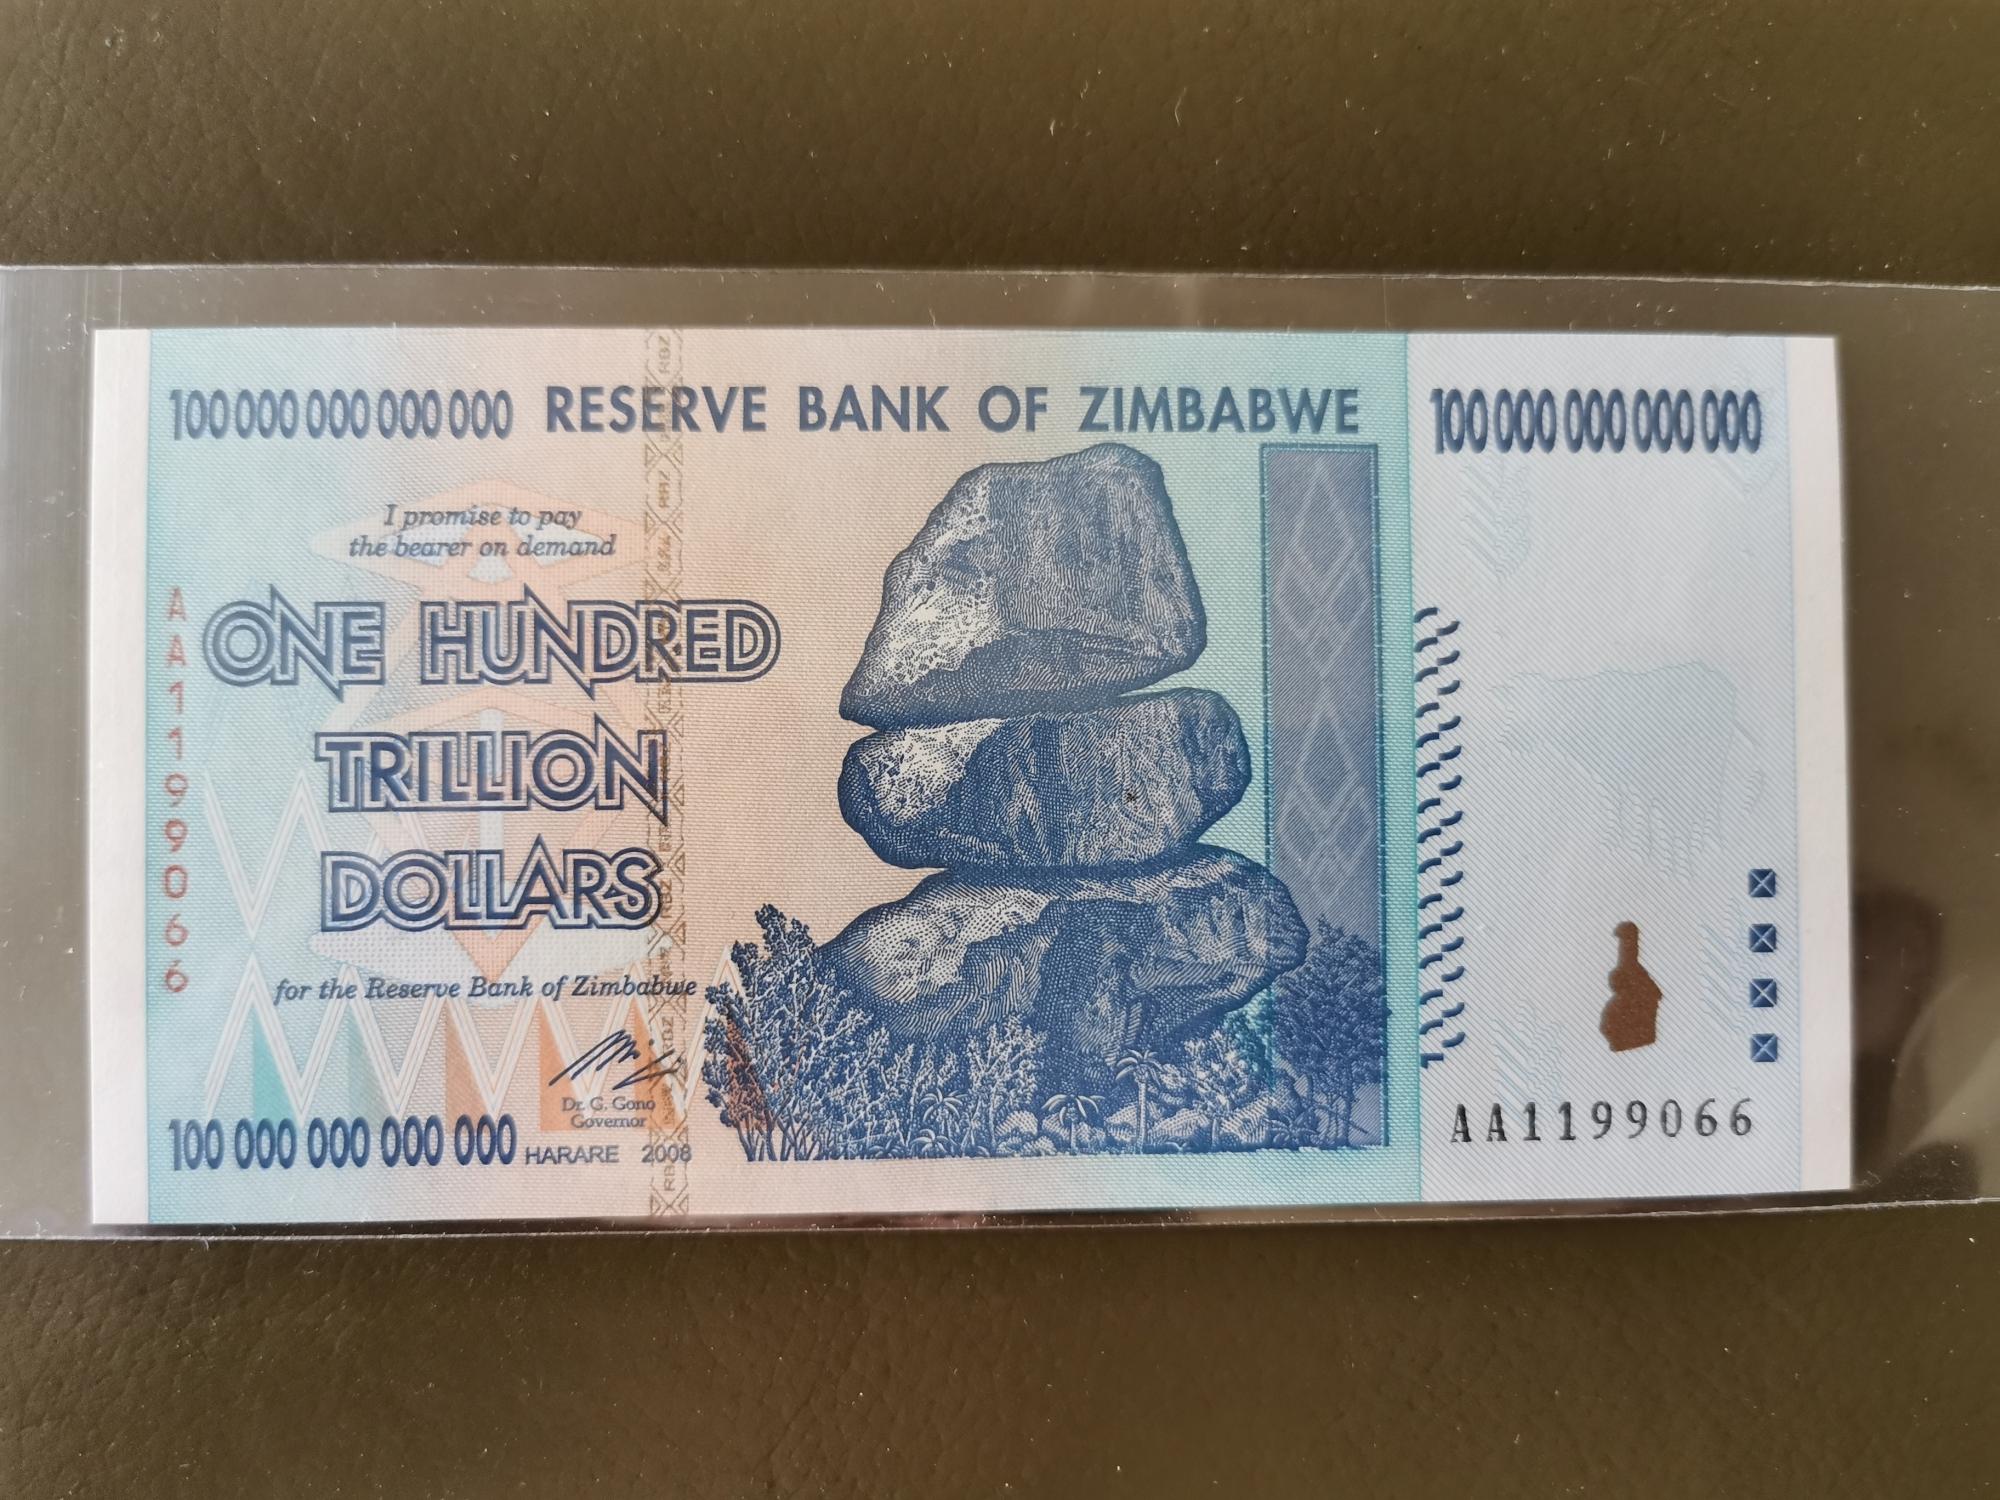 Сто триллионов. Купюра 100 триллионов долларов Зимбабве. Зимбабве купюра 100 триллионов. 1 Триллион долларов Зимбабве. 100 Трлн зимбабвийских долларов.